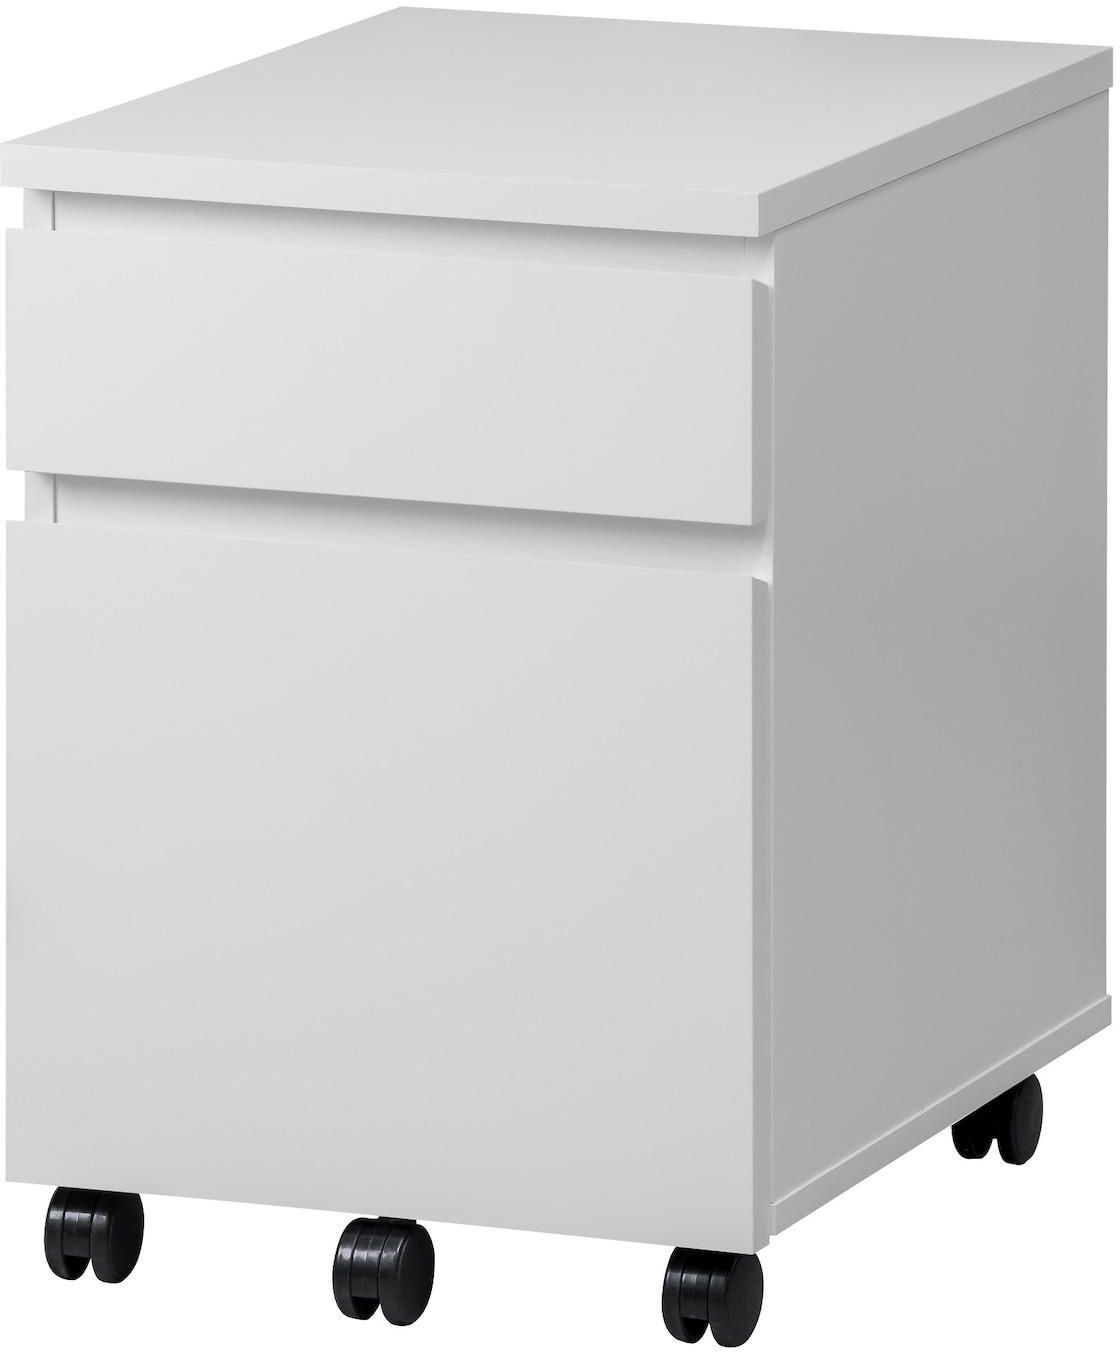 MALM Drawer unit on castors - white 42x59 cm